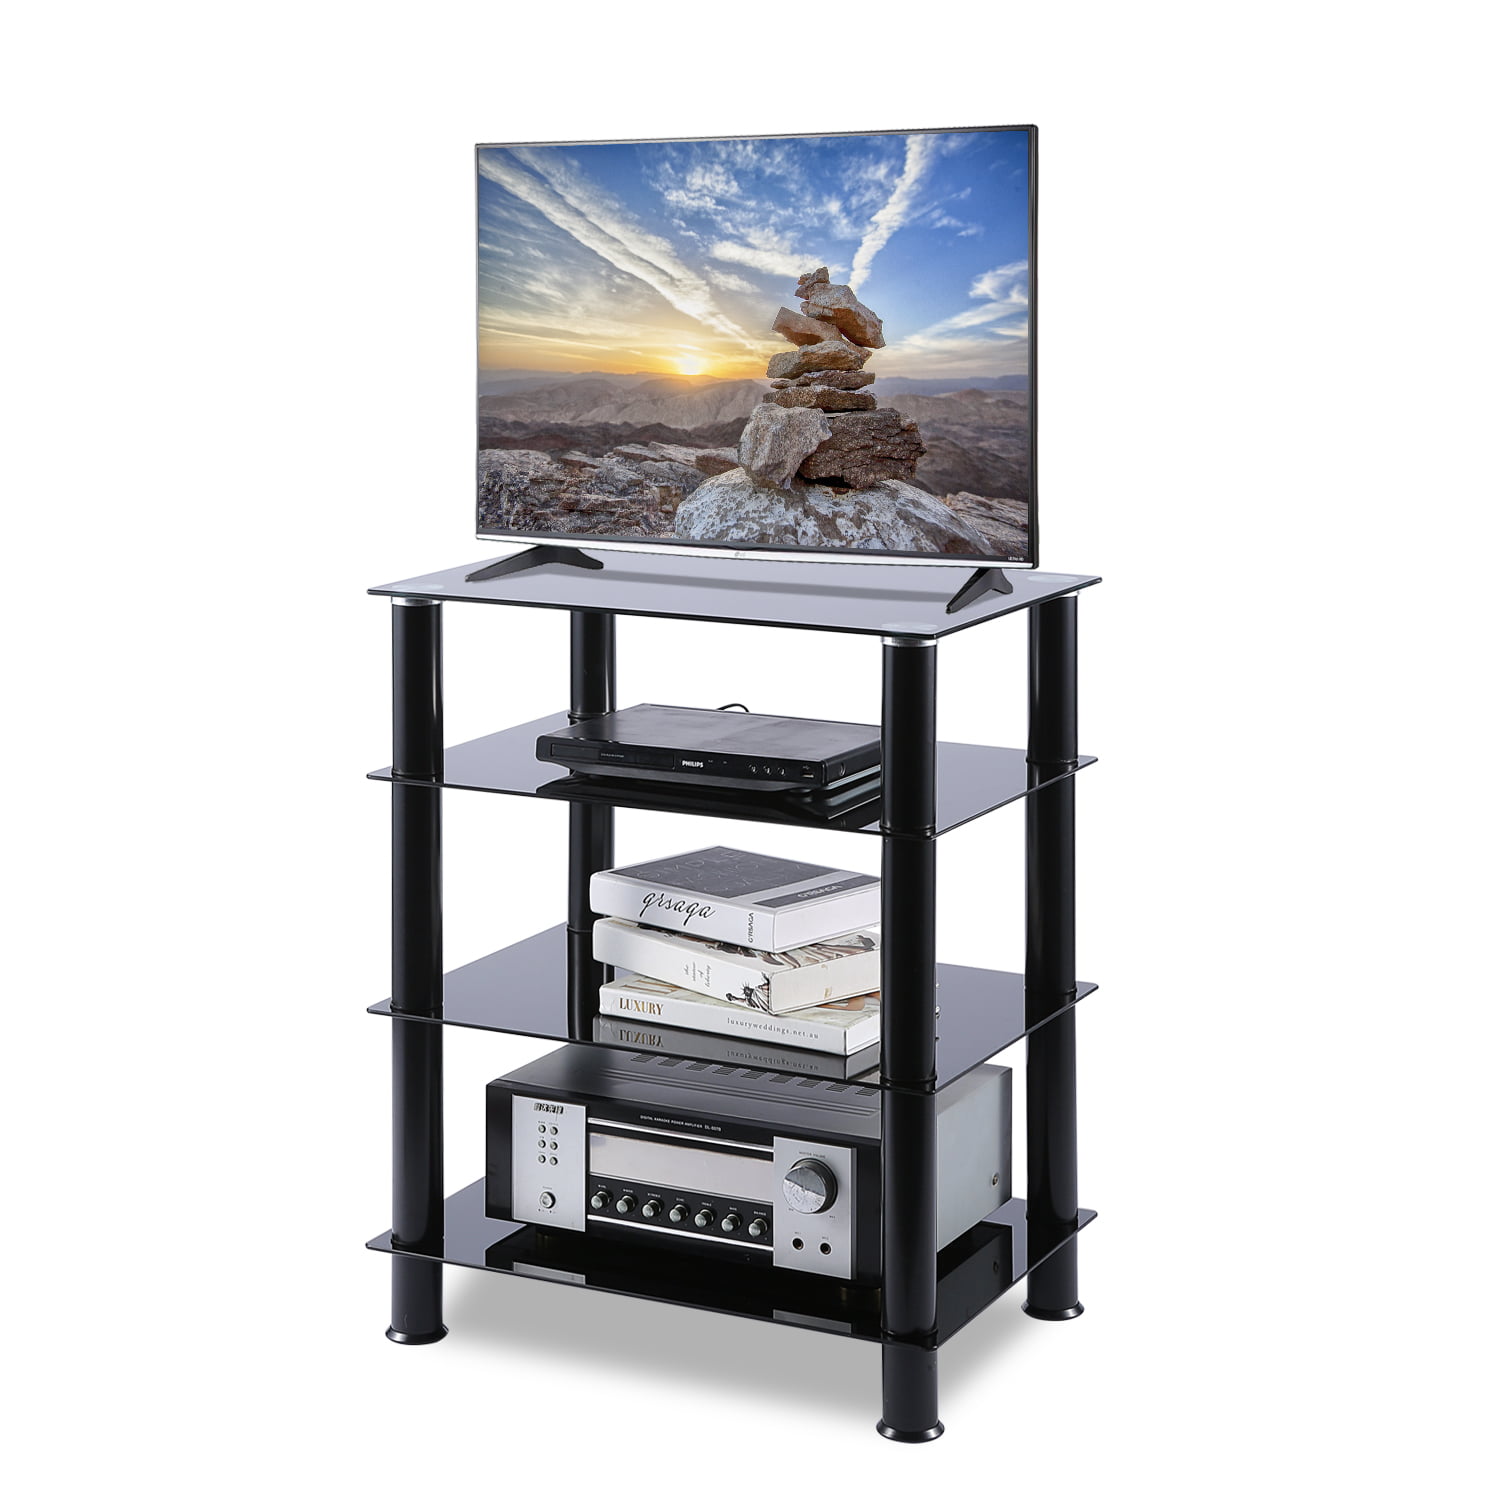 TAVR Furniture Mobili TV Torretta Video Audio in Vetro 4-Tiers Supporto Multimediale TV HF1001 4 livelli 